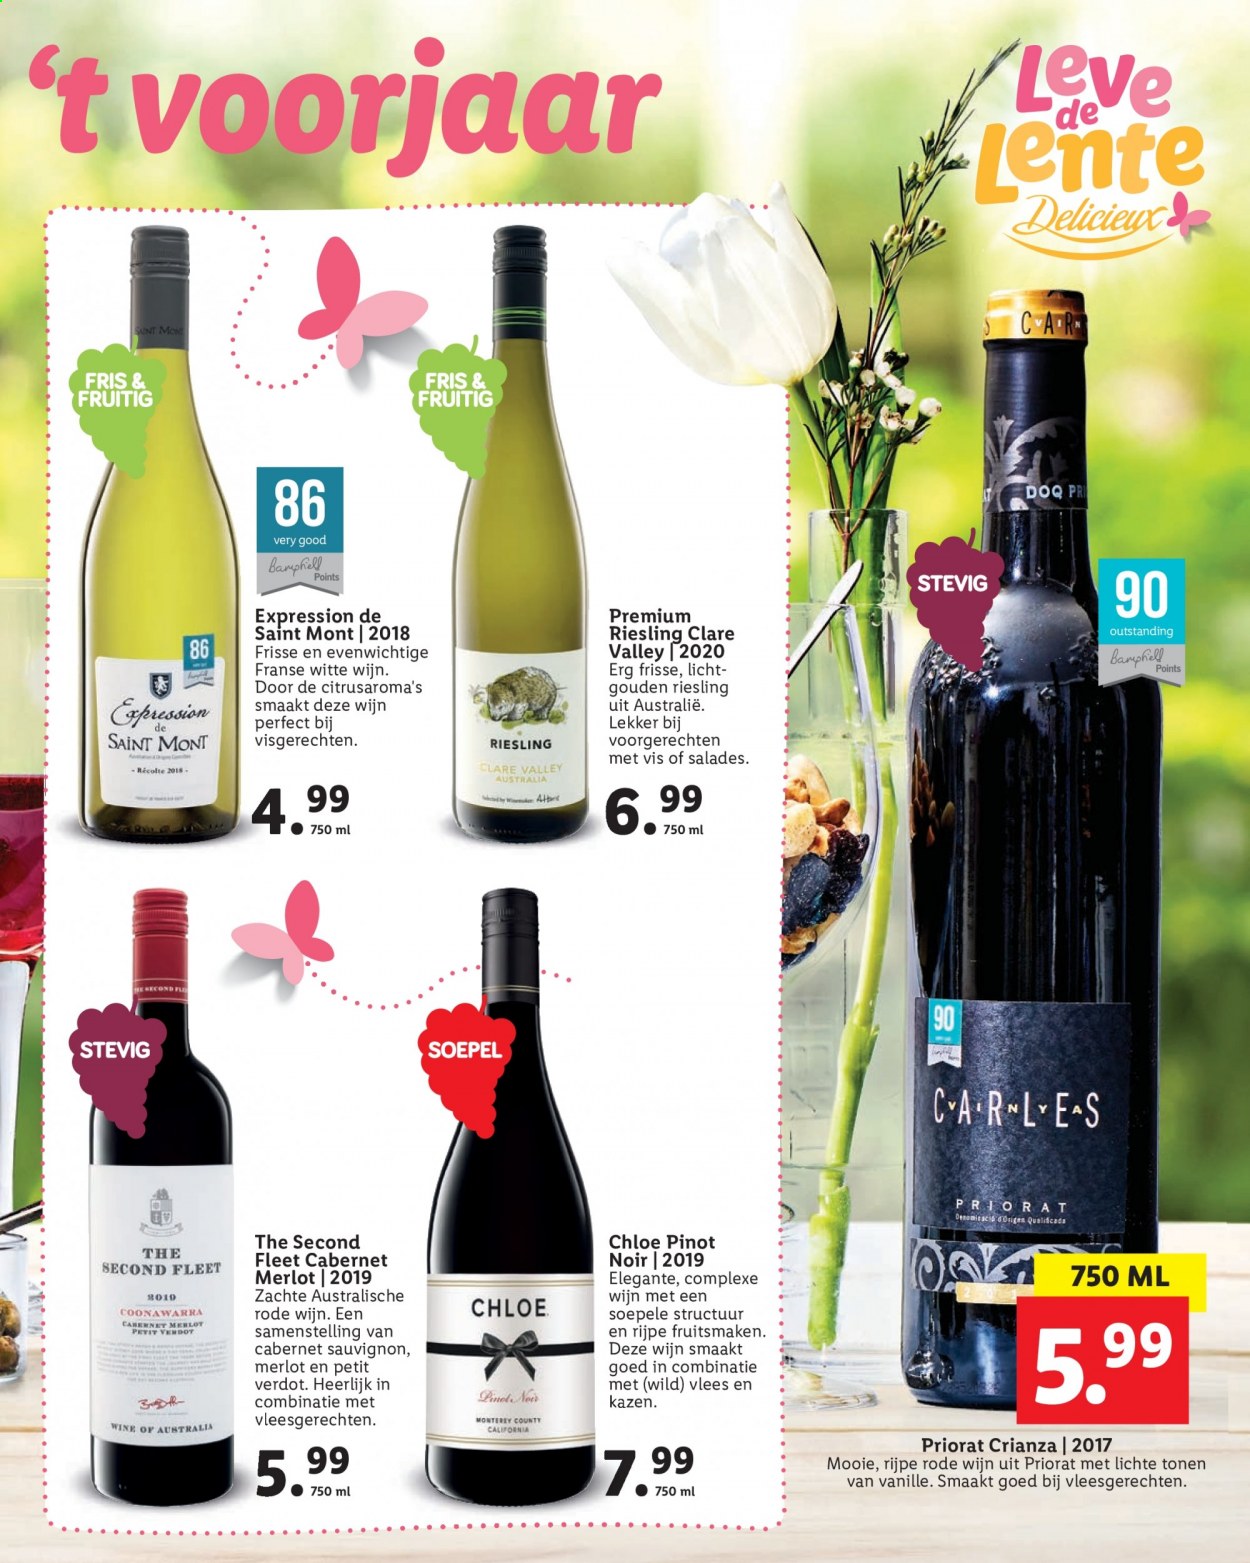 thumbnail - Lidl-aanbieding -  producten in de aanbieding - Cabernet Sauvignon, Merlot, riesling, Pinot Noir, rode wijn, witte wijn, wijn, Chloé. Pagina 45.